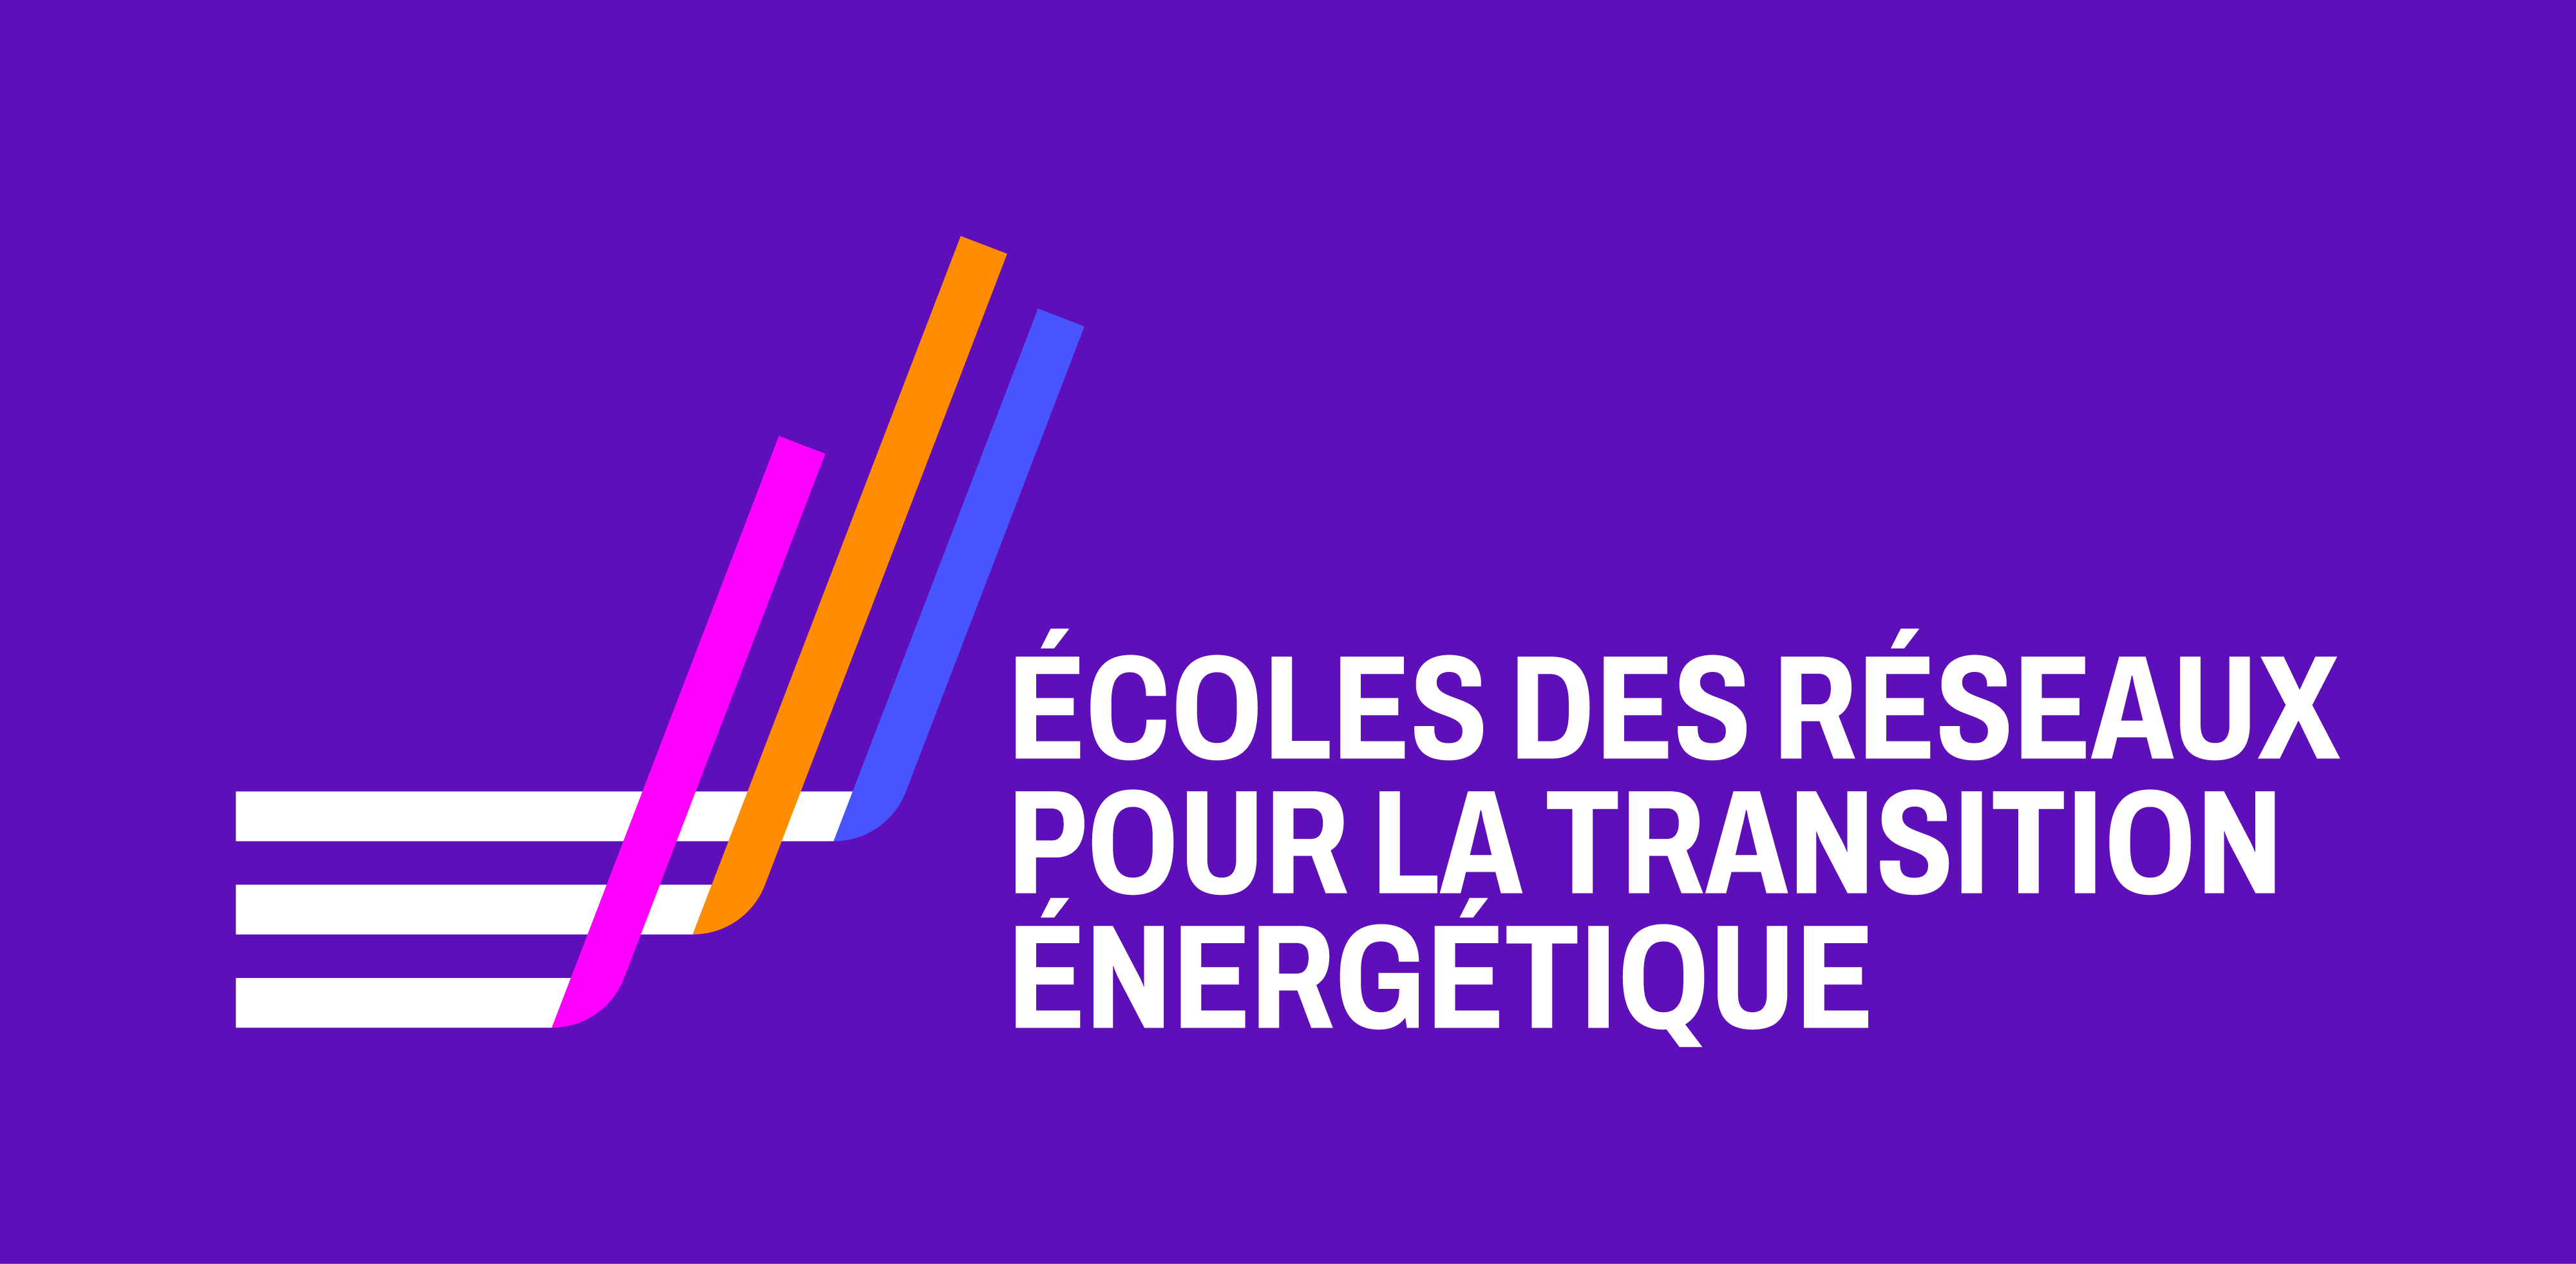 L'ECOLES DES RESEAUX POUR LA TRANSITION ENERGETIQUE